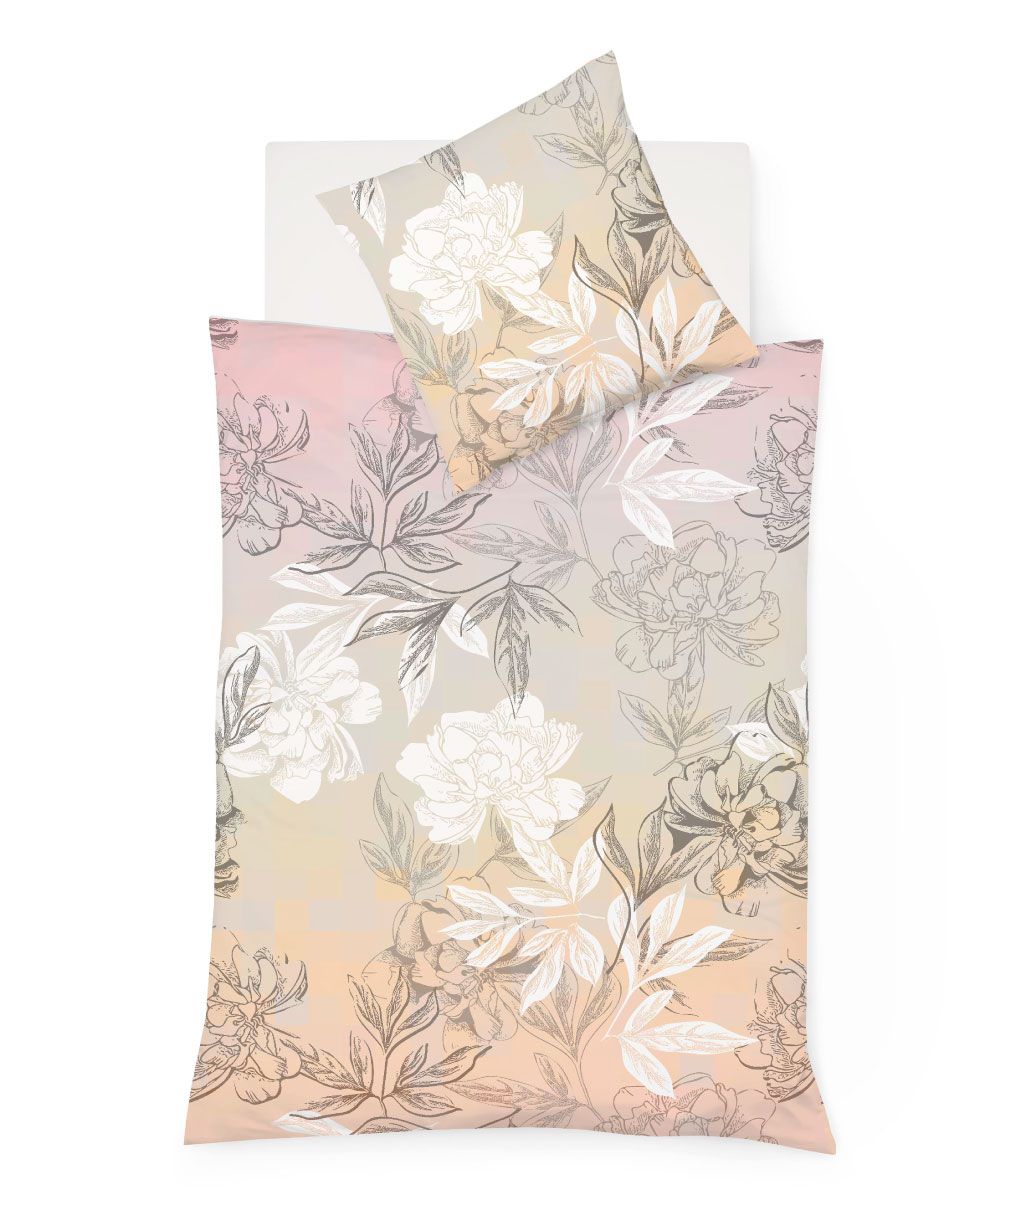 Bettwäsche in Pastellfarben mit grossen Blüten und Blättern